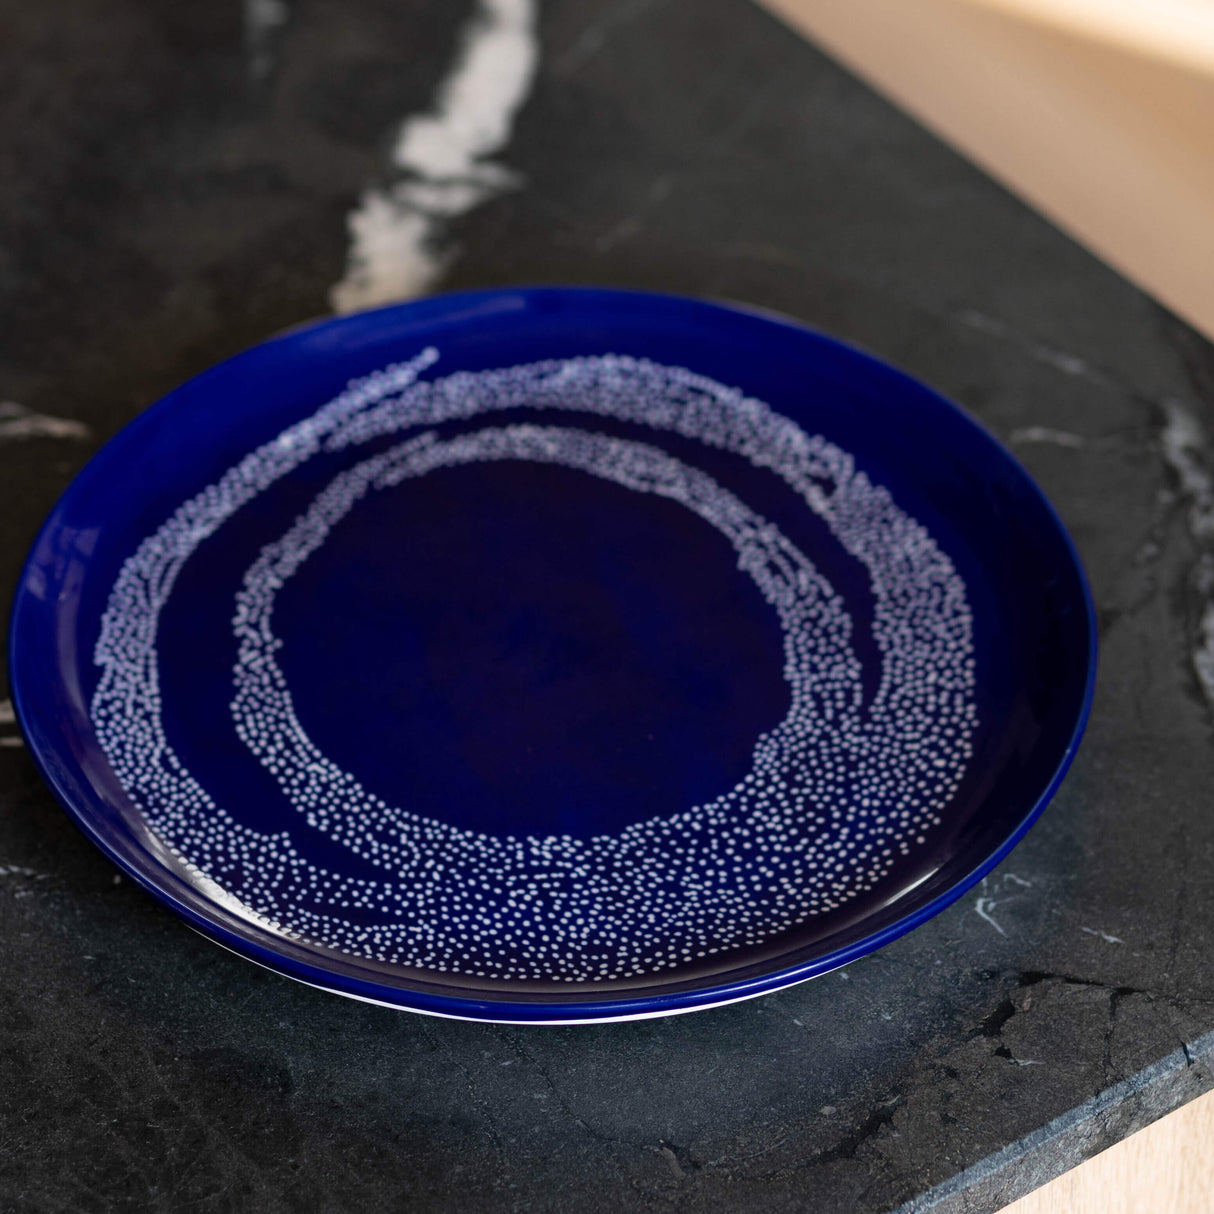 Ottolenghi Teller 2-er Set Lapis Lazuli Swirl-Dots, Blau-Weiß, D 26,5 cm